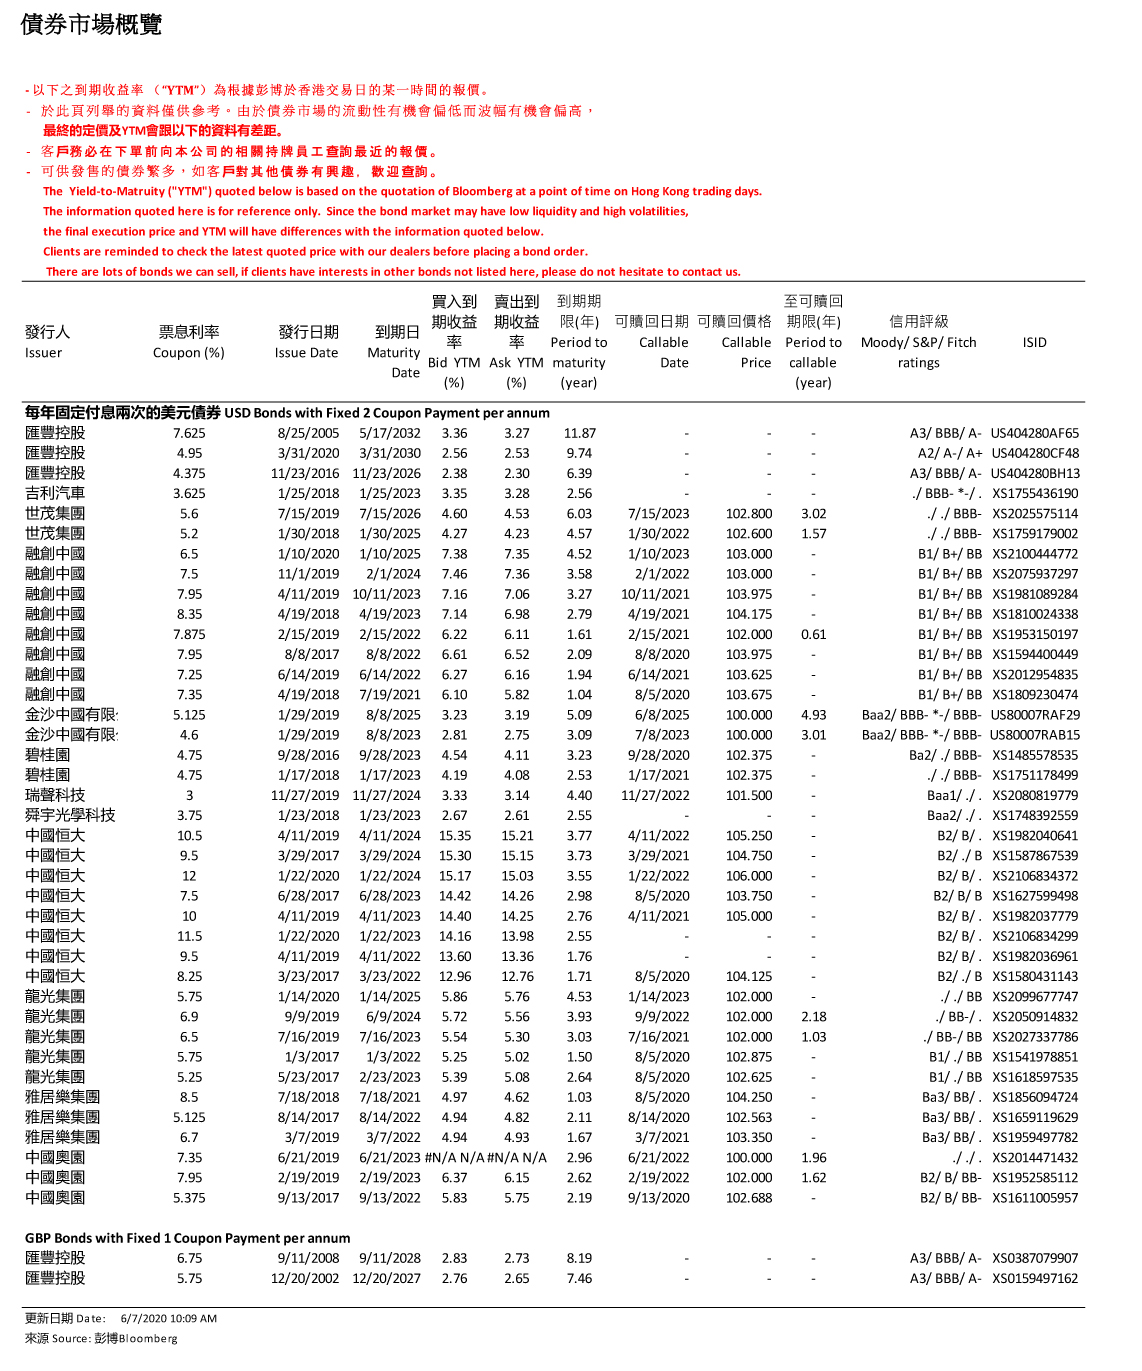 南華金融 SCtrade.com 債券市場概覽 (7月6日)